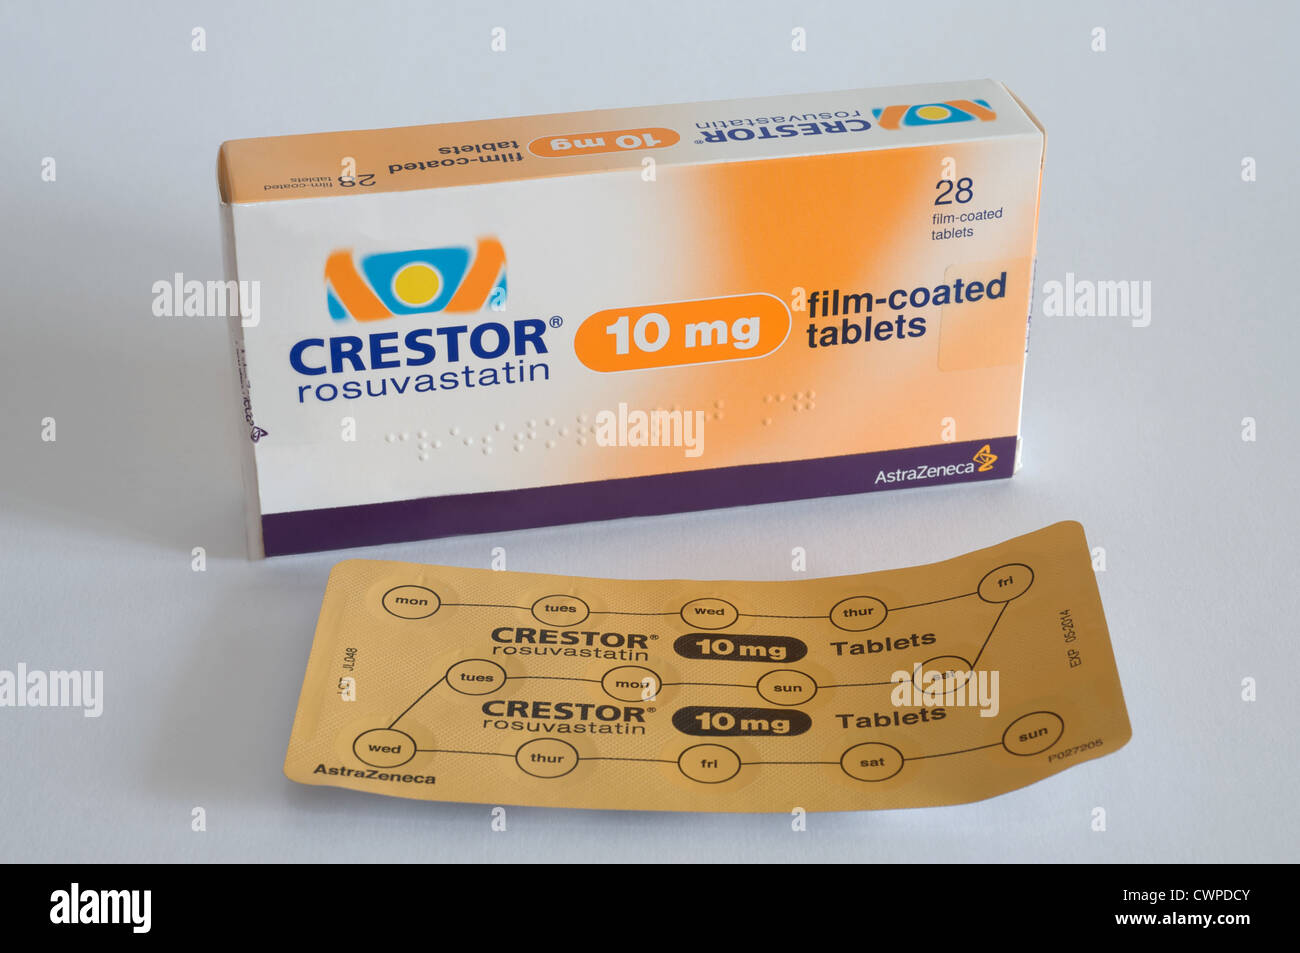 astrazeneca-crestor-rosuvastatina-fotos-e-im-genes-de-stock-alamy